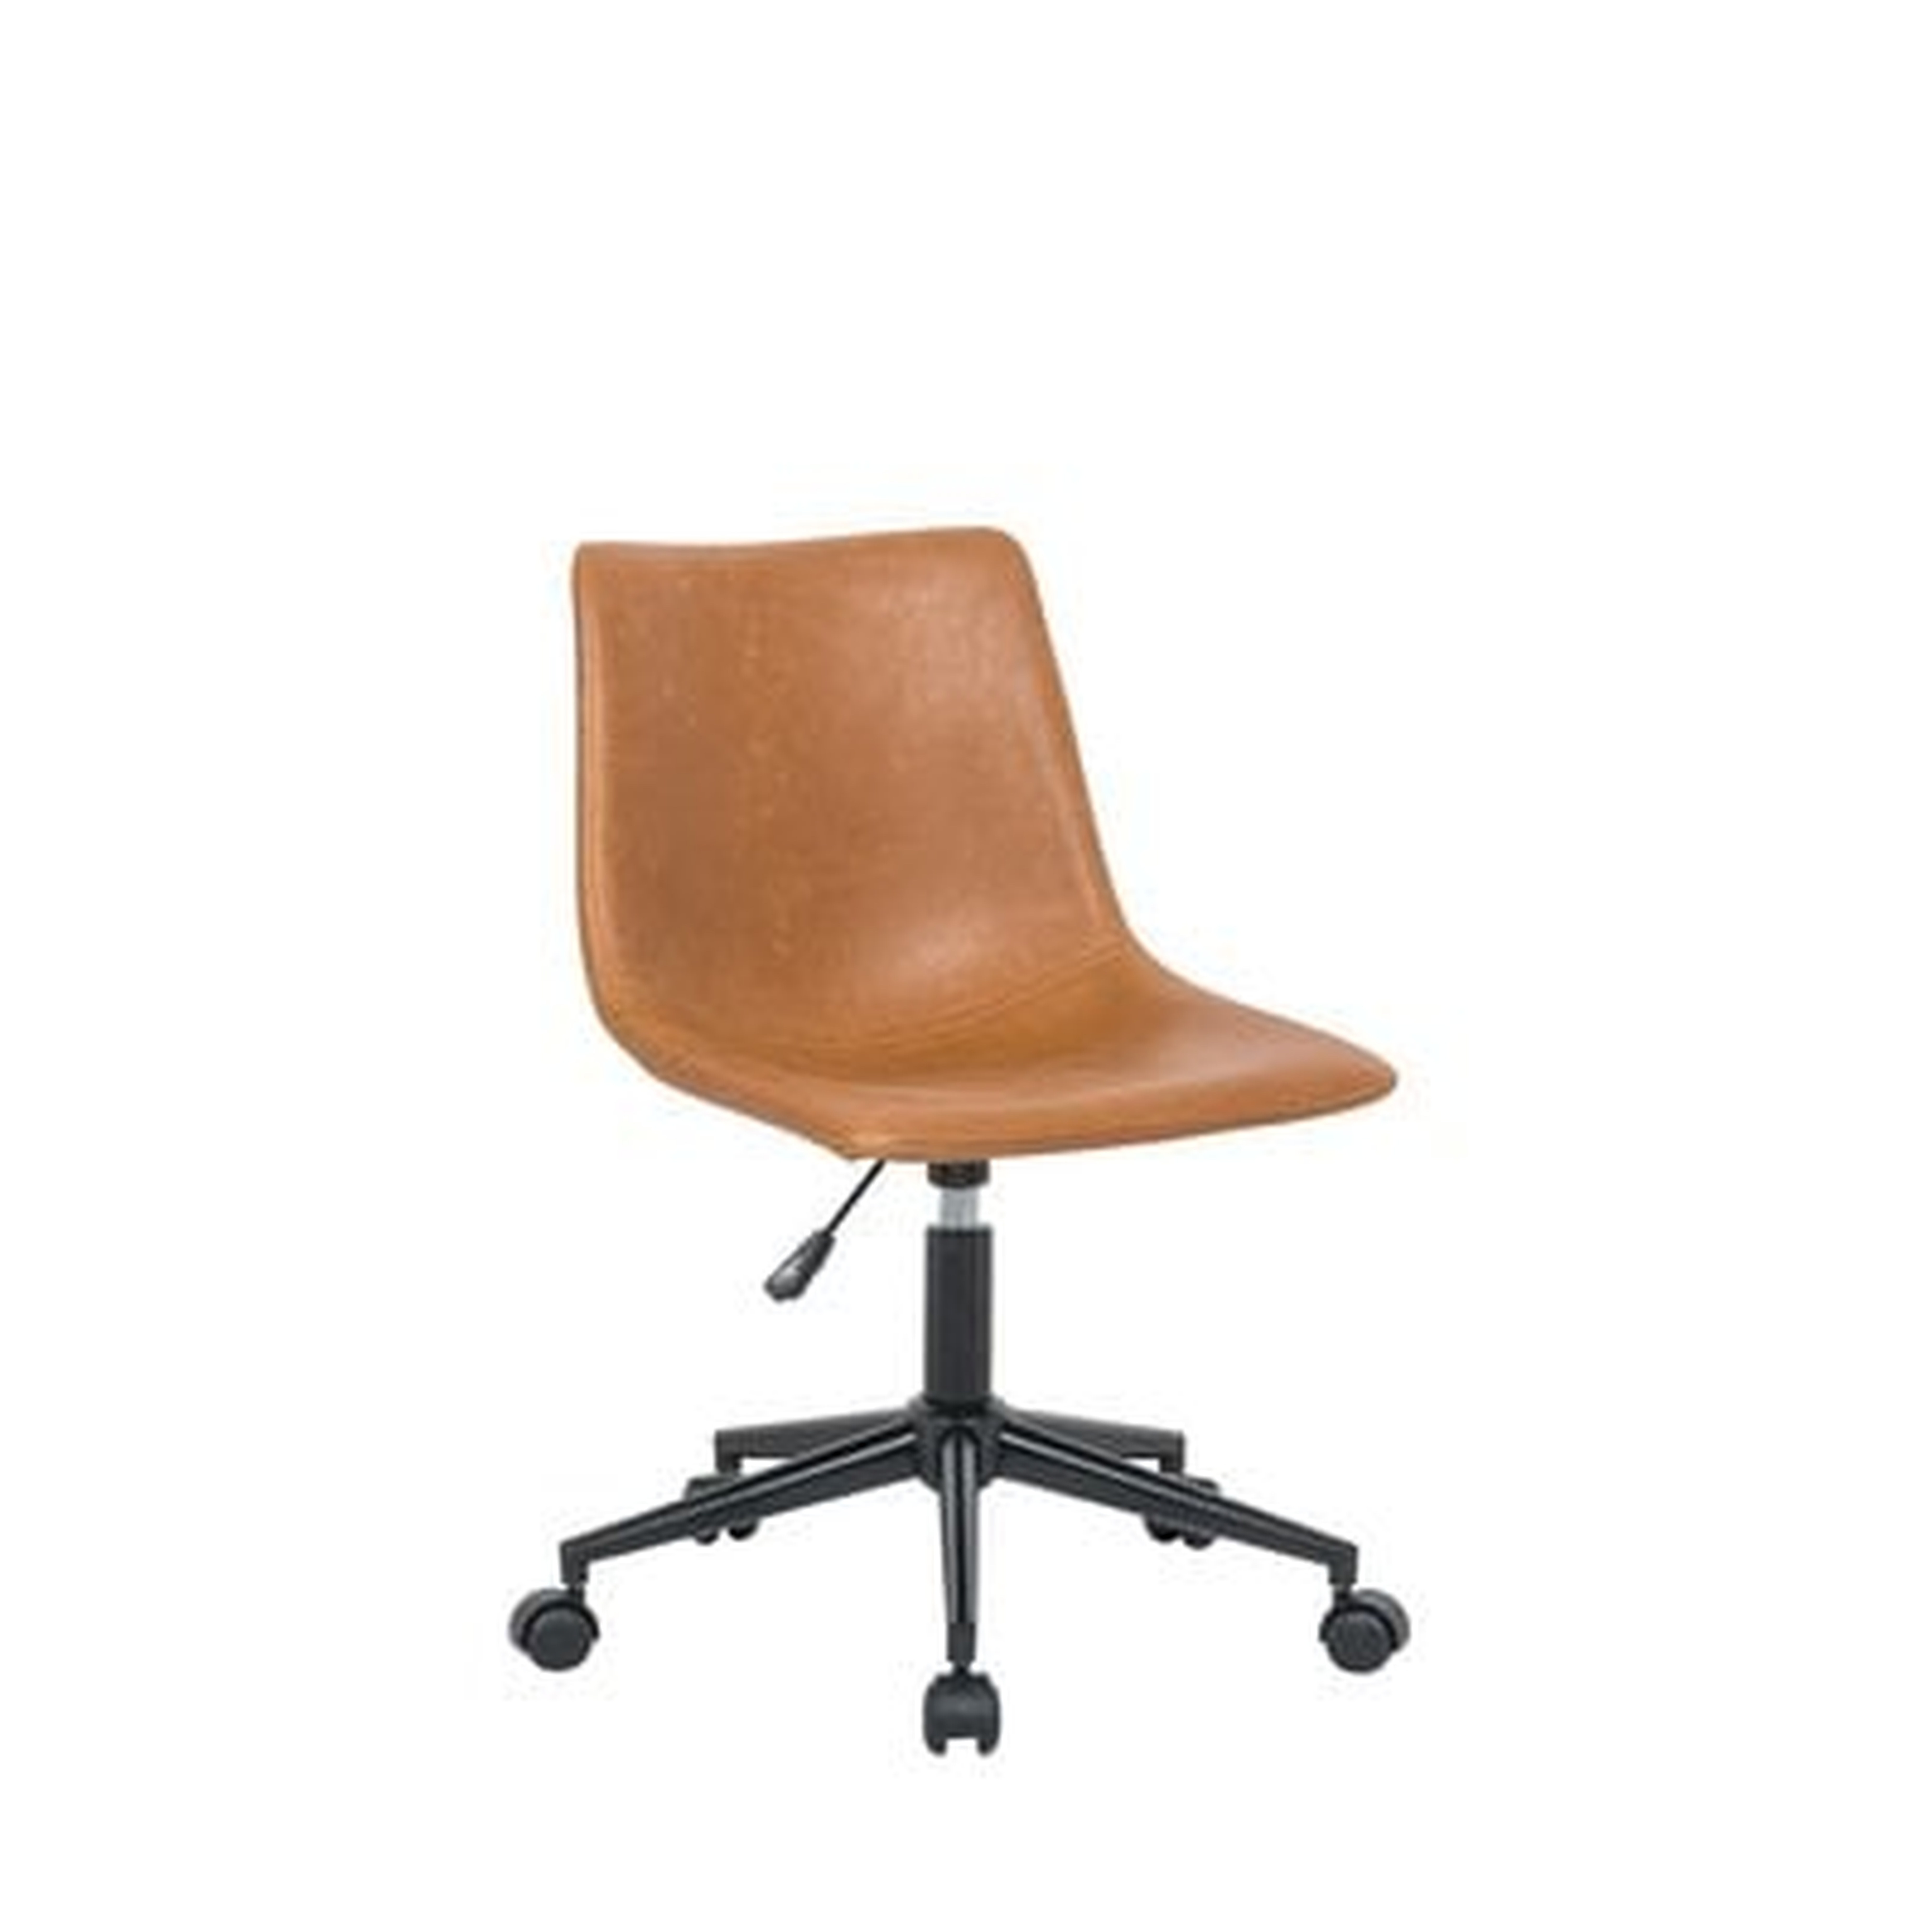 Task Chair - AllModern